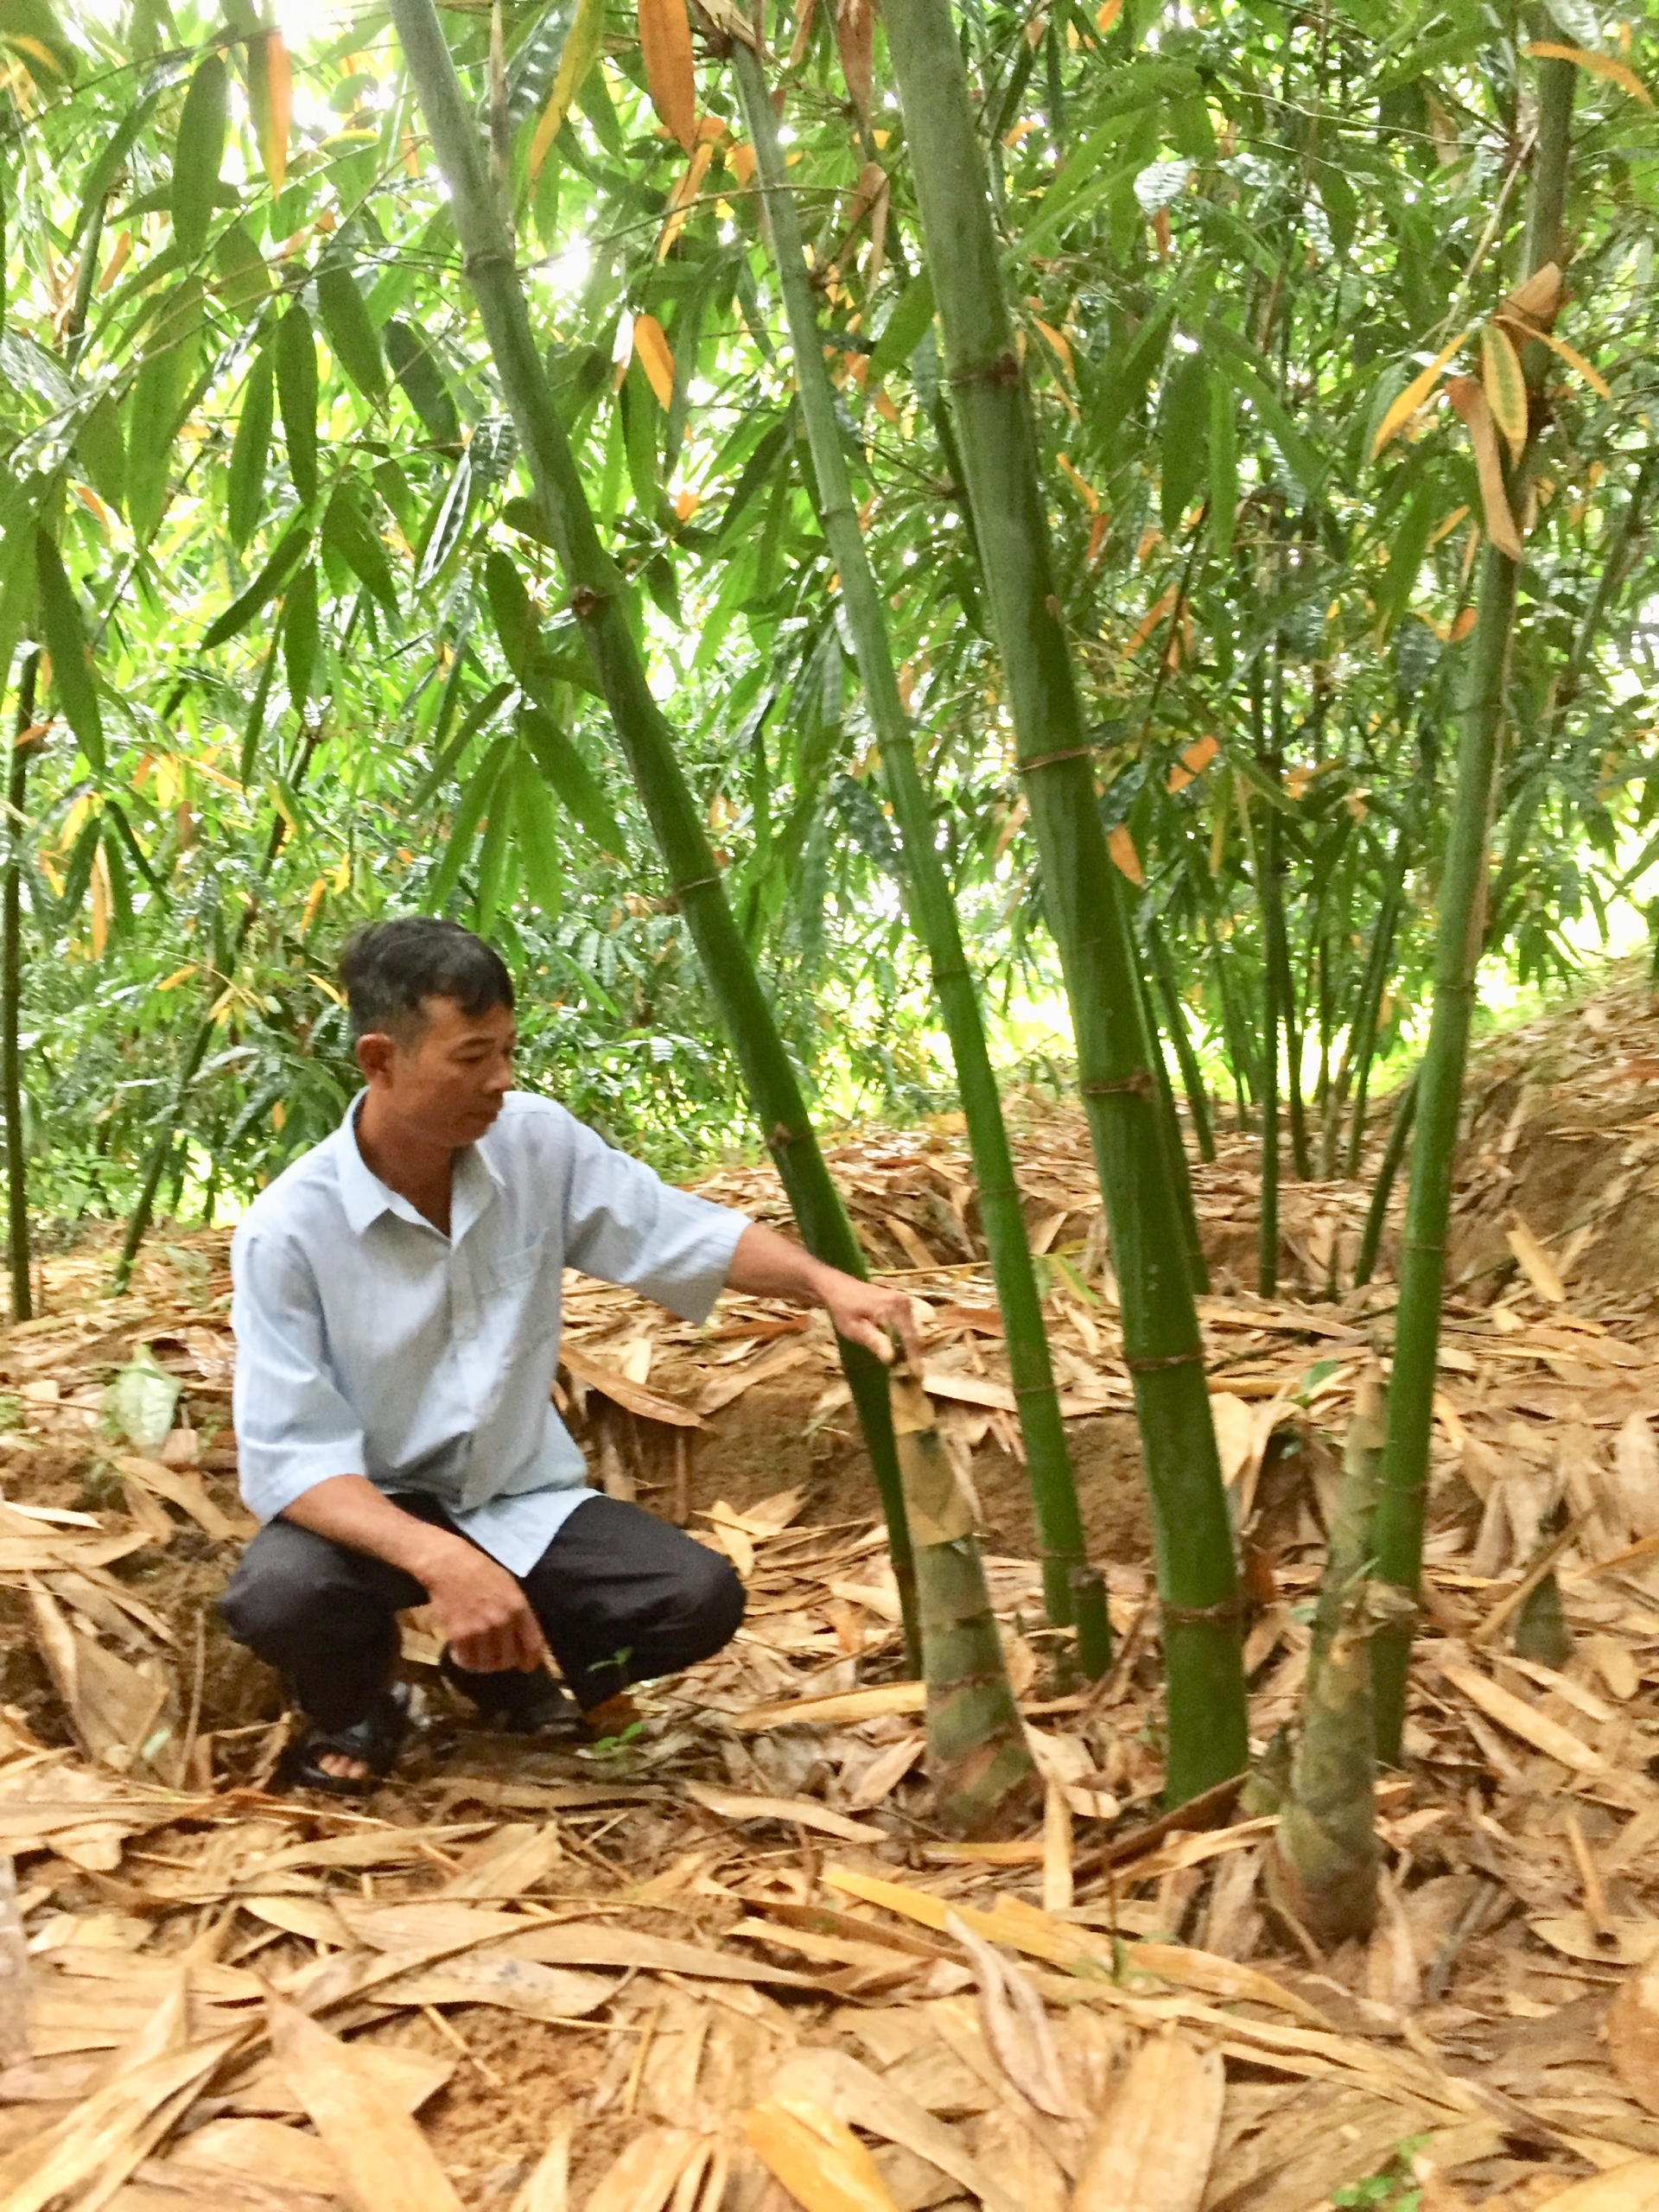 Trồng tre trong vườn, anh nông dân Đắk Lắk cắt bán hàng tấn măng, cho thu nhập cao - Ảnh 1.